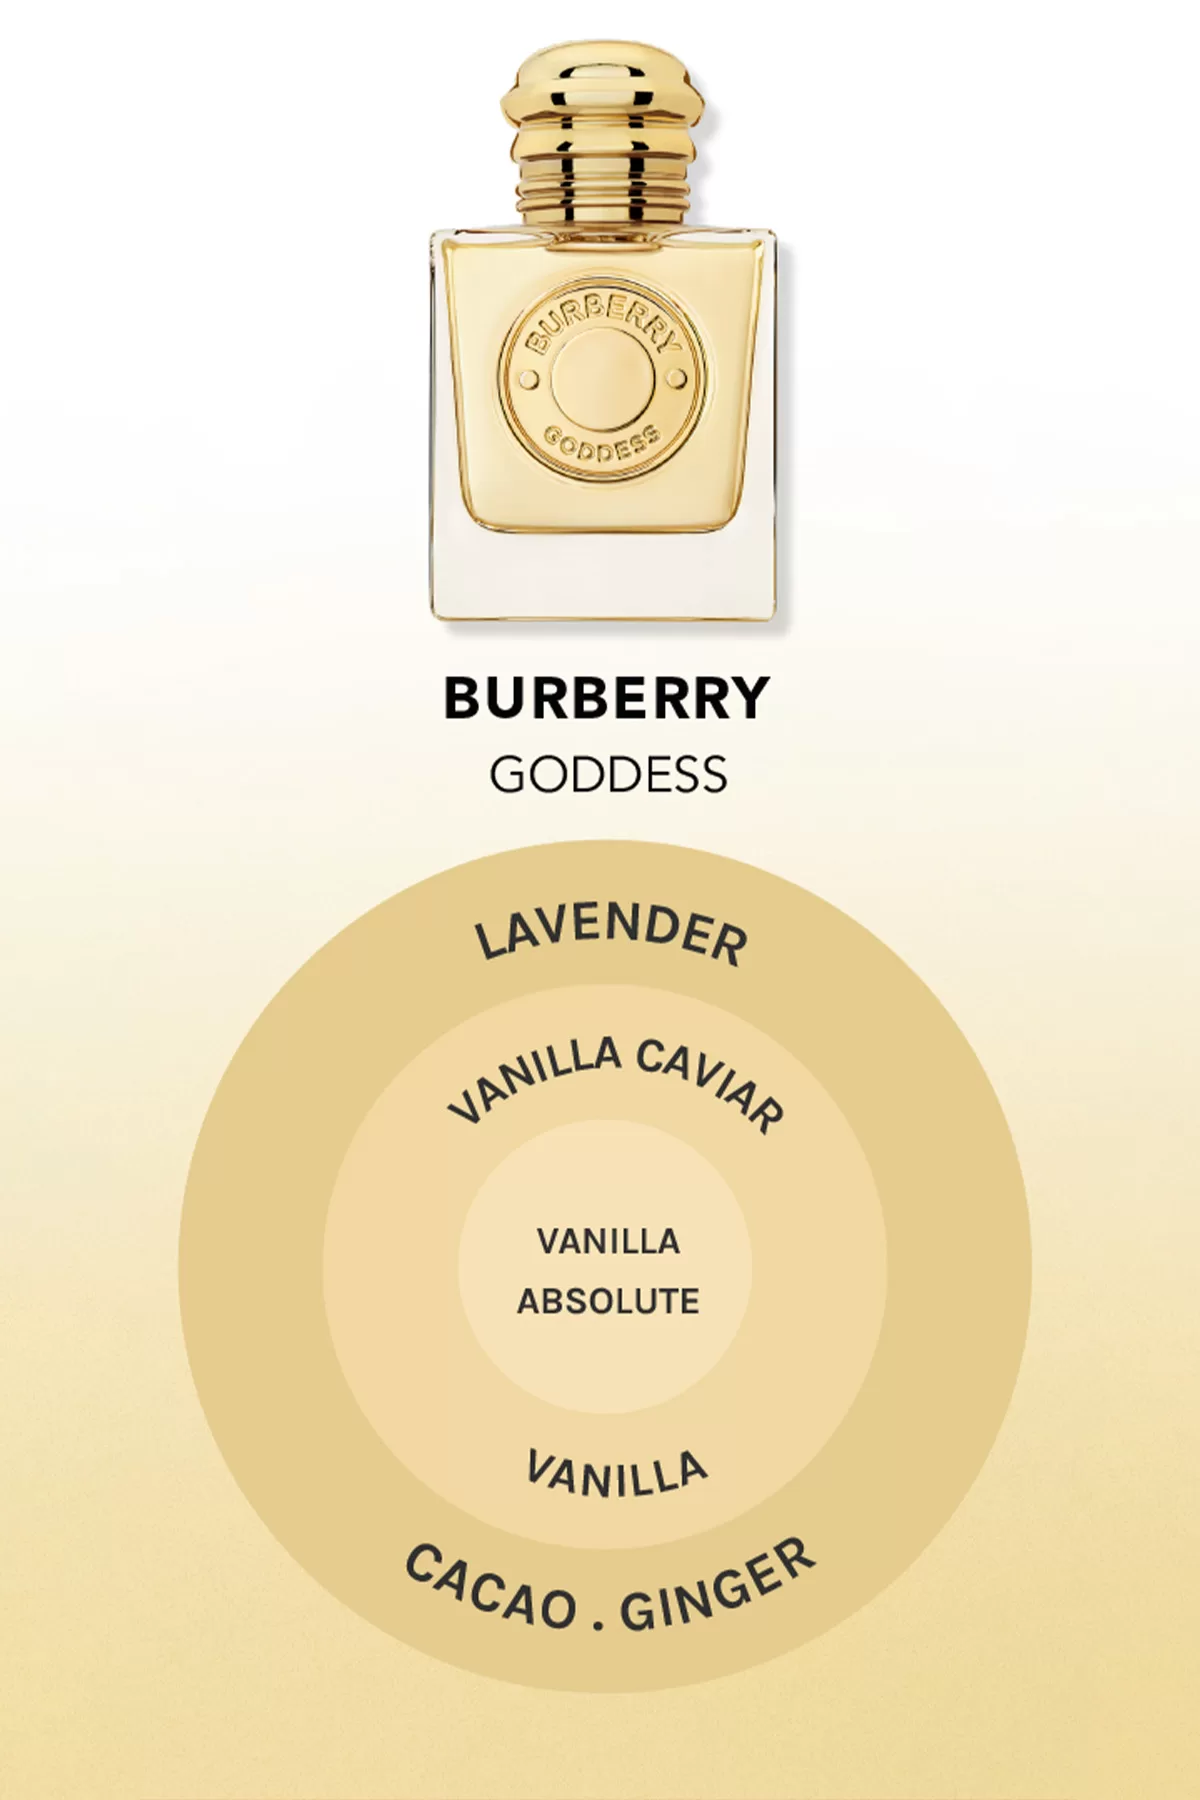 Burberry Goddess ใหม่มีกลิ่นอะไร?